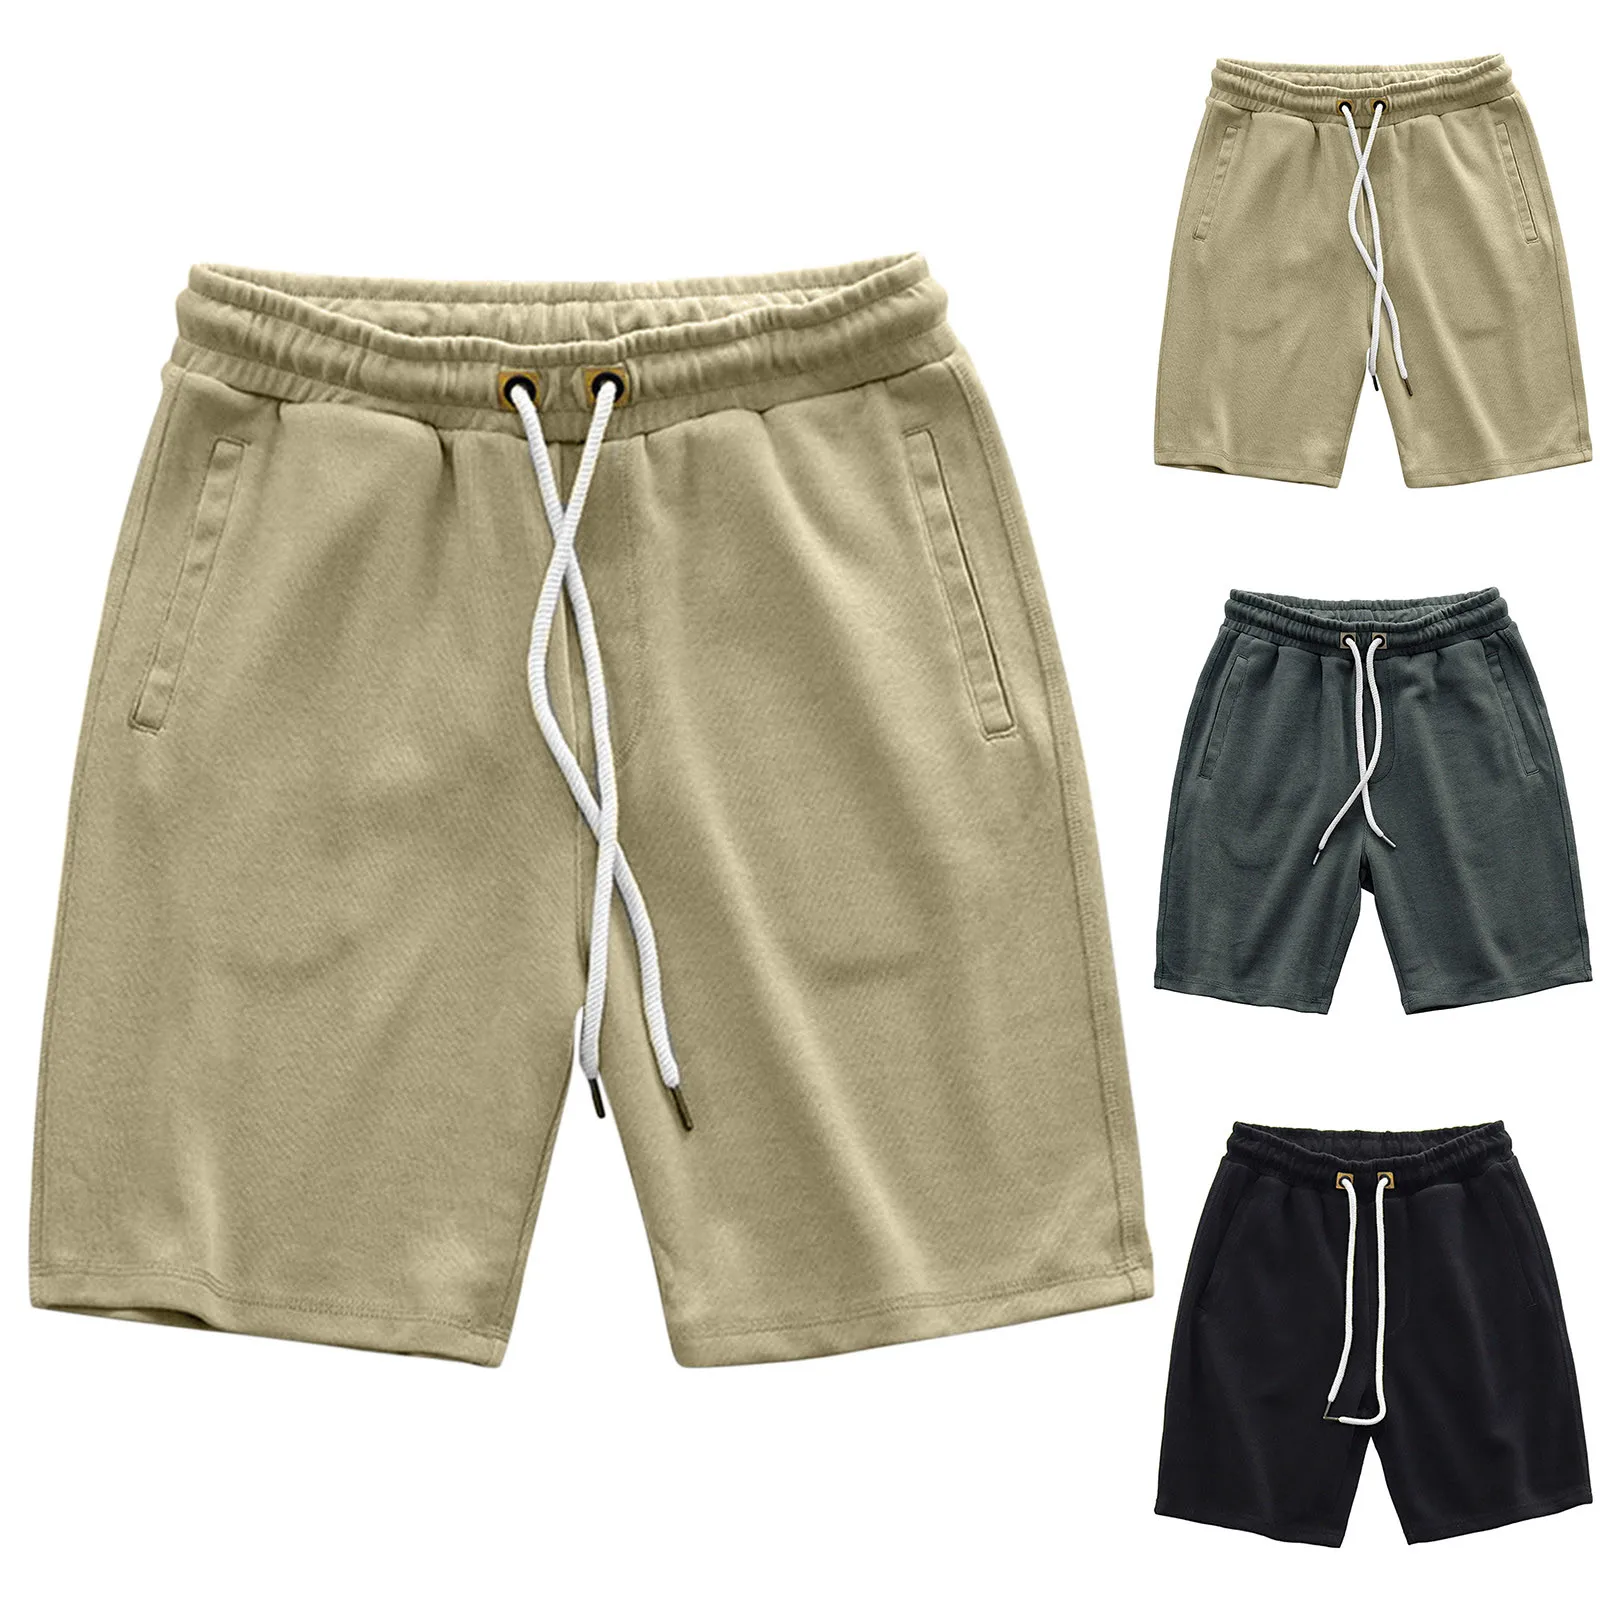 

Летние мужские модные спортивные повседневные брюки с эластичной резинкой на талии, прямые свободные шорты, пляжные штаны, уличная одежда, ...